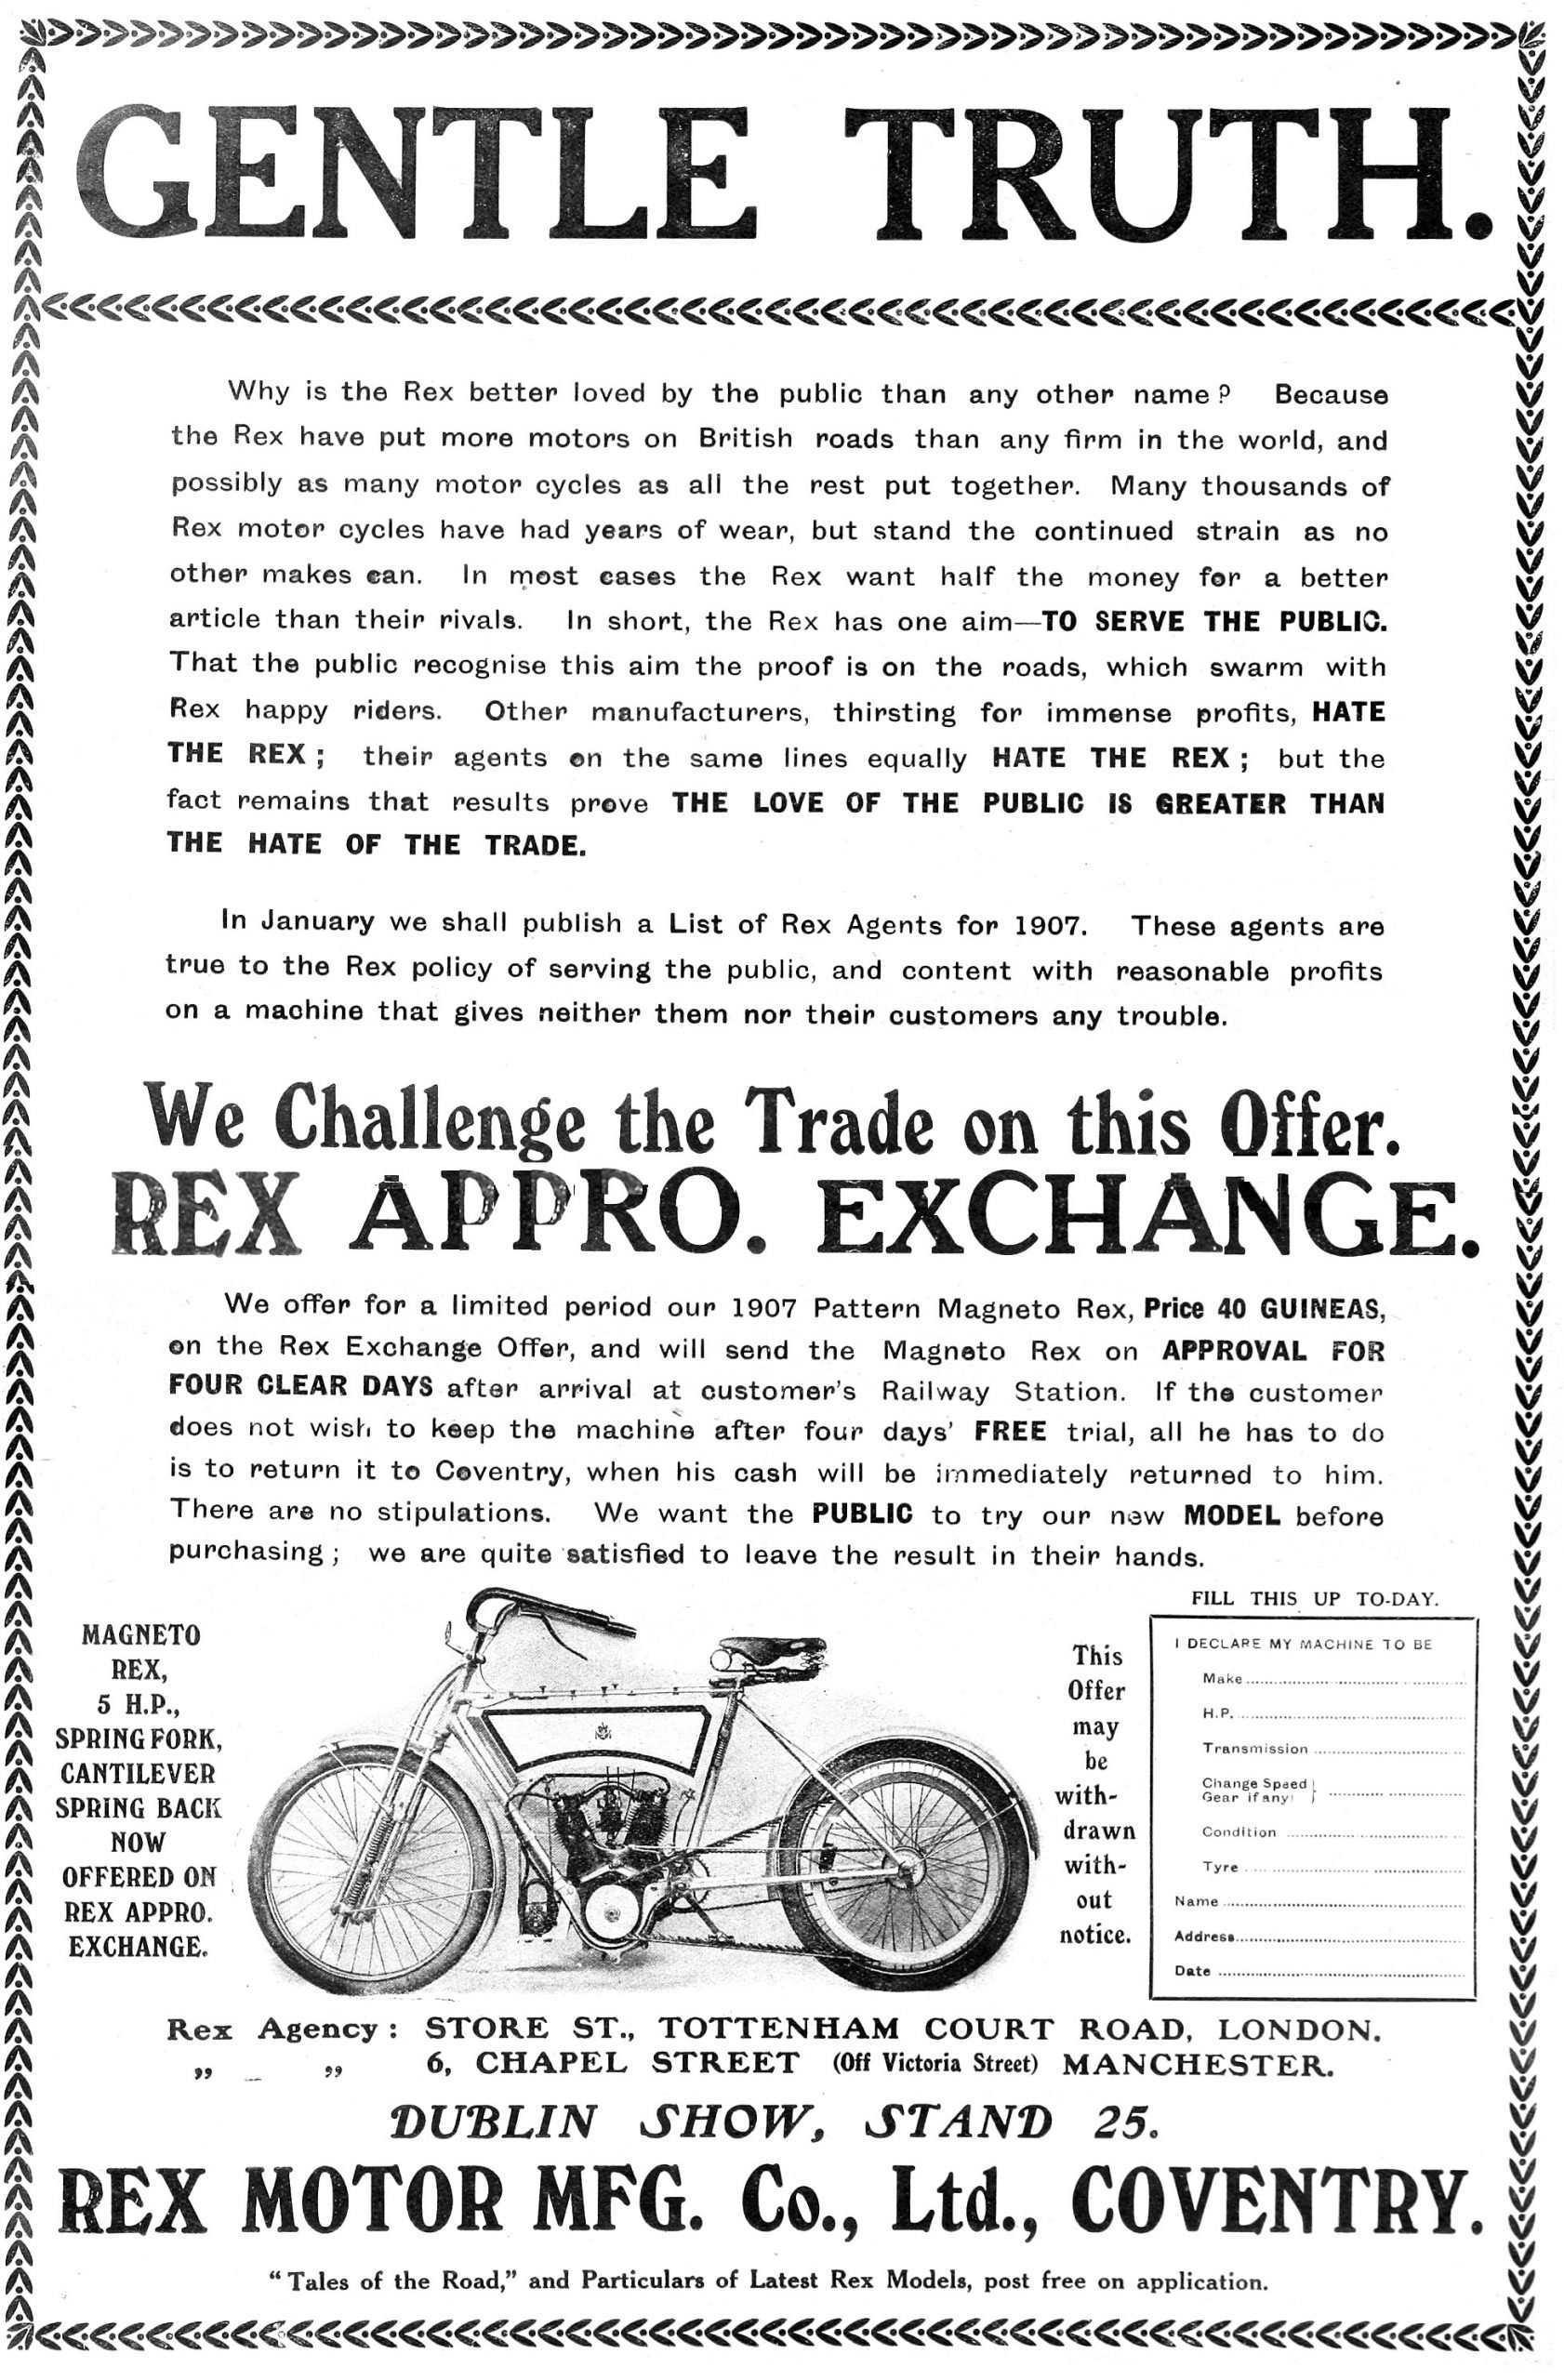 1907 Rex Motor Cycle